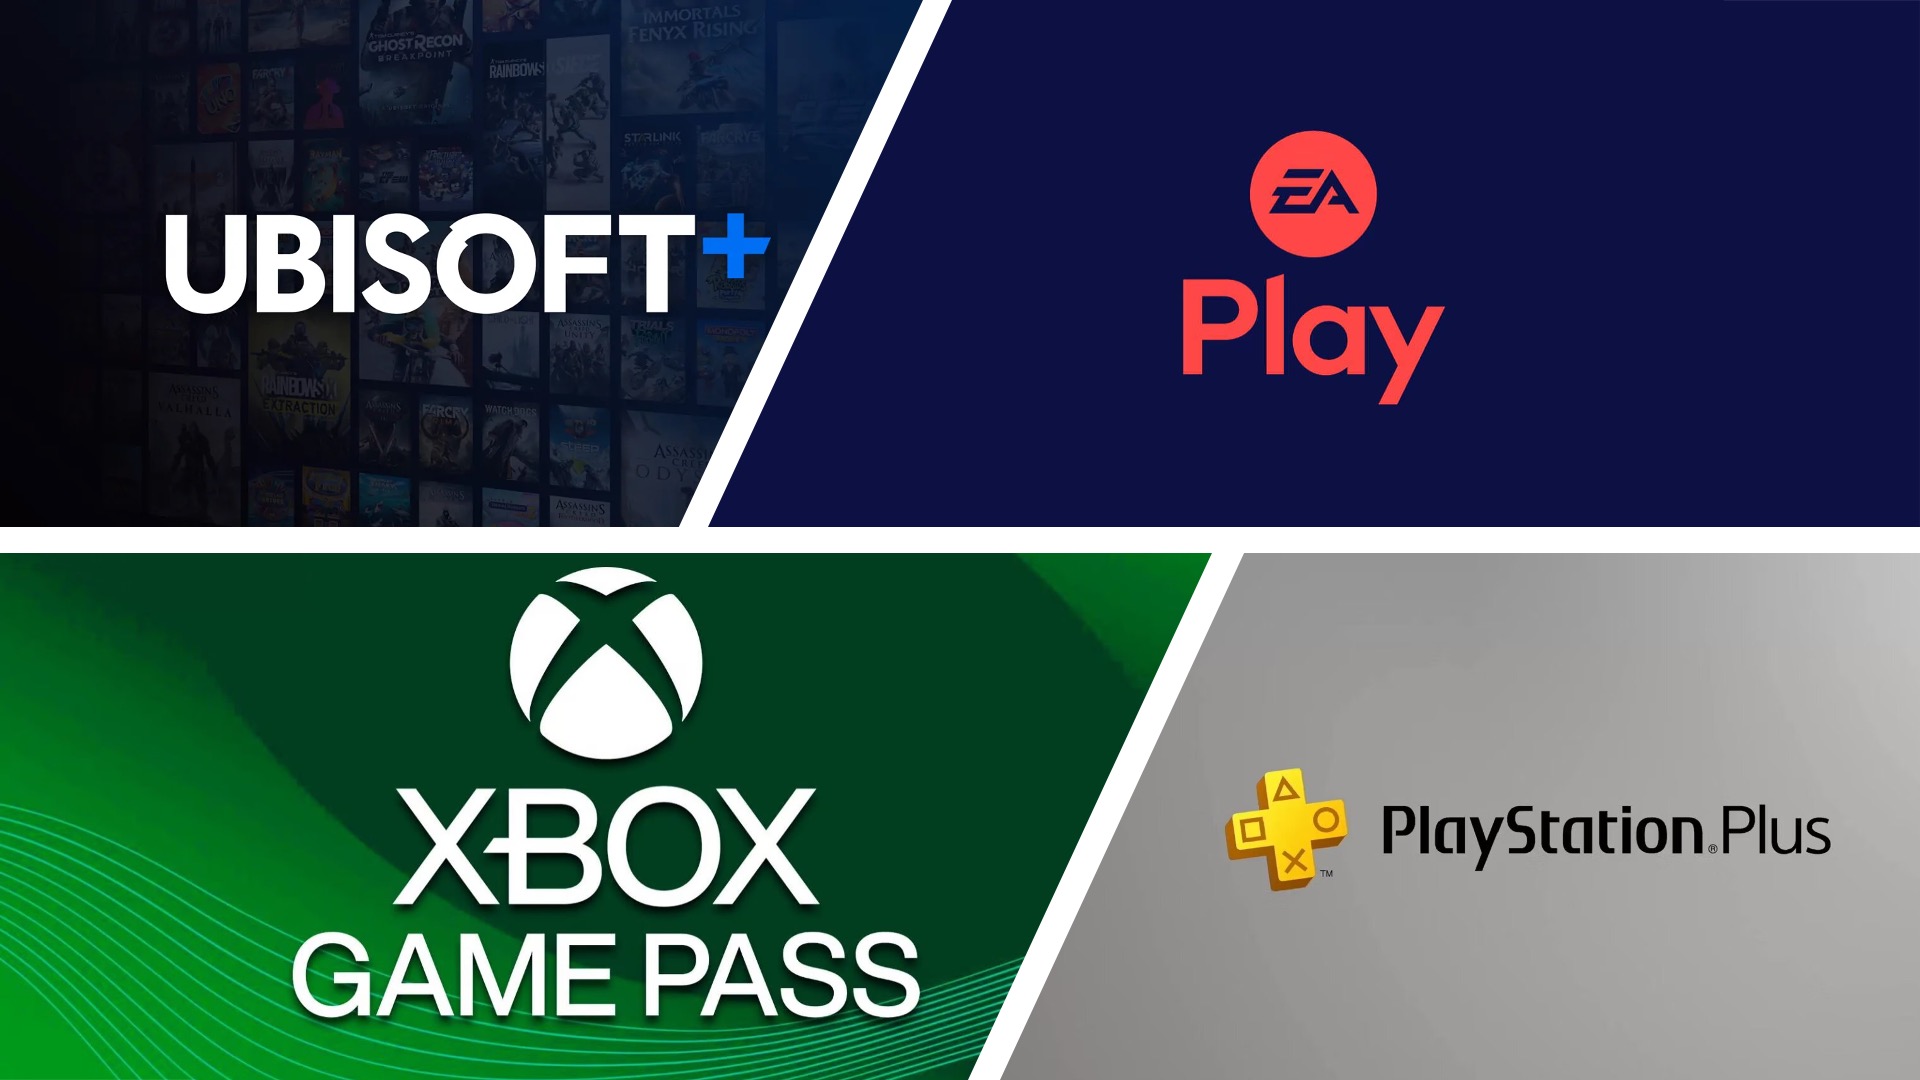 Services jeux vidéo : Ubisoft+, EA Play, Xbox Game Pass et PS Plus ©Gameblog